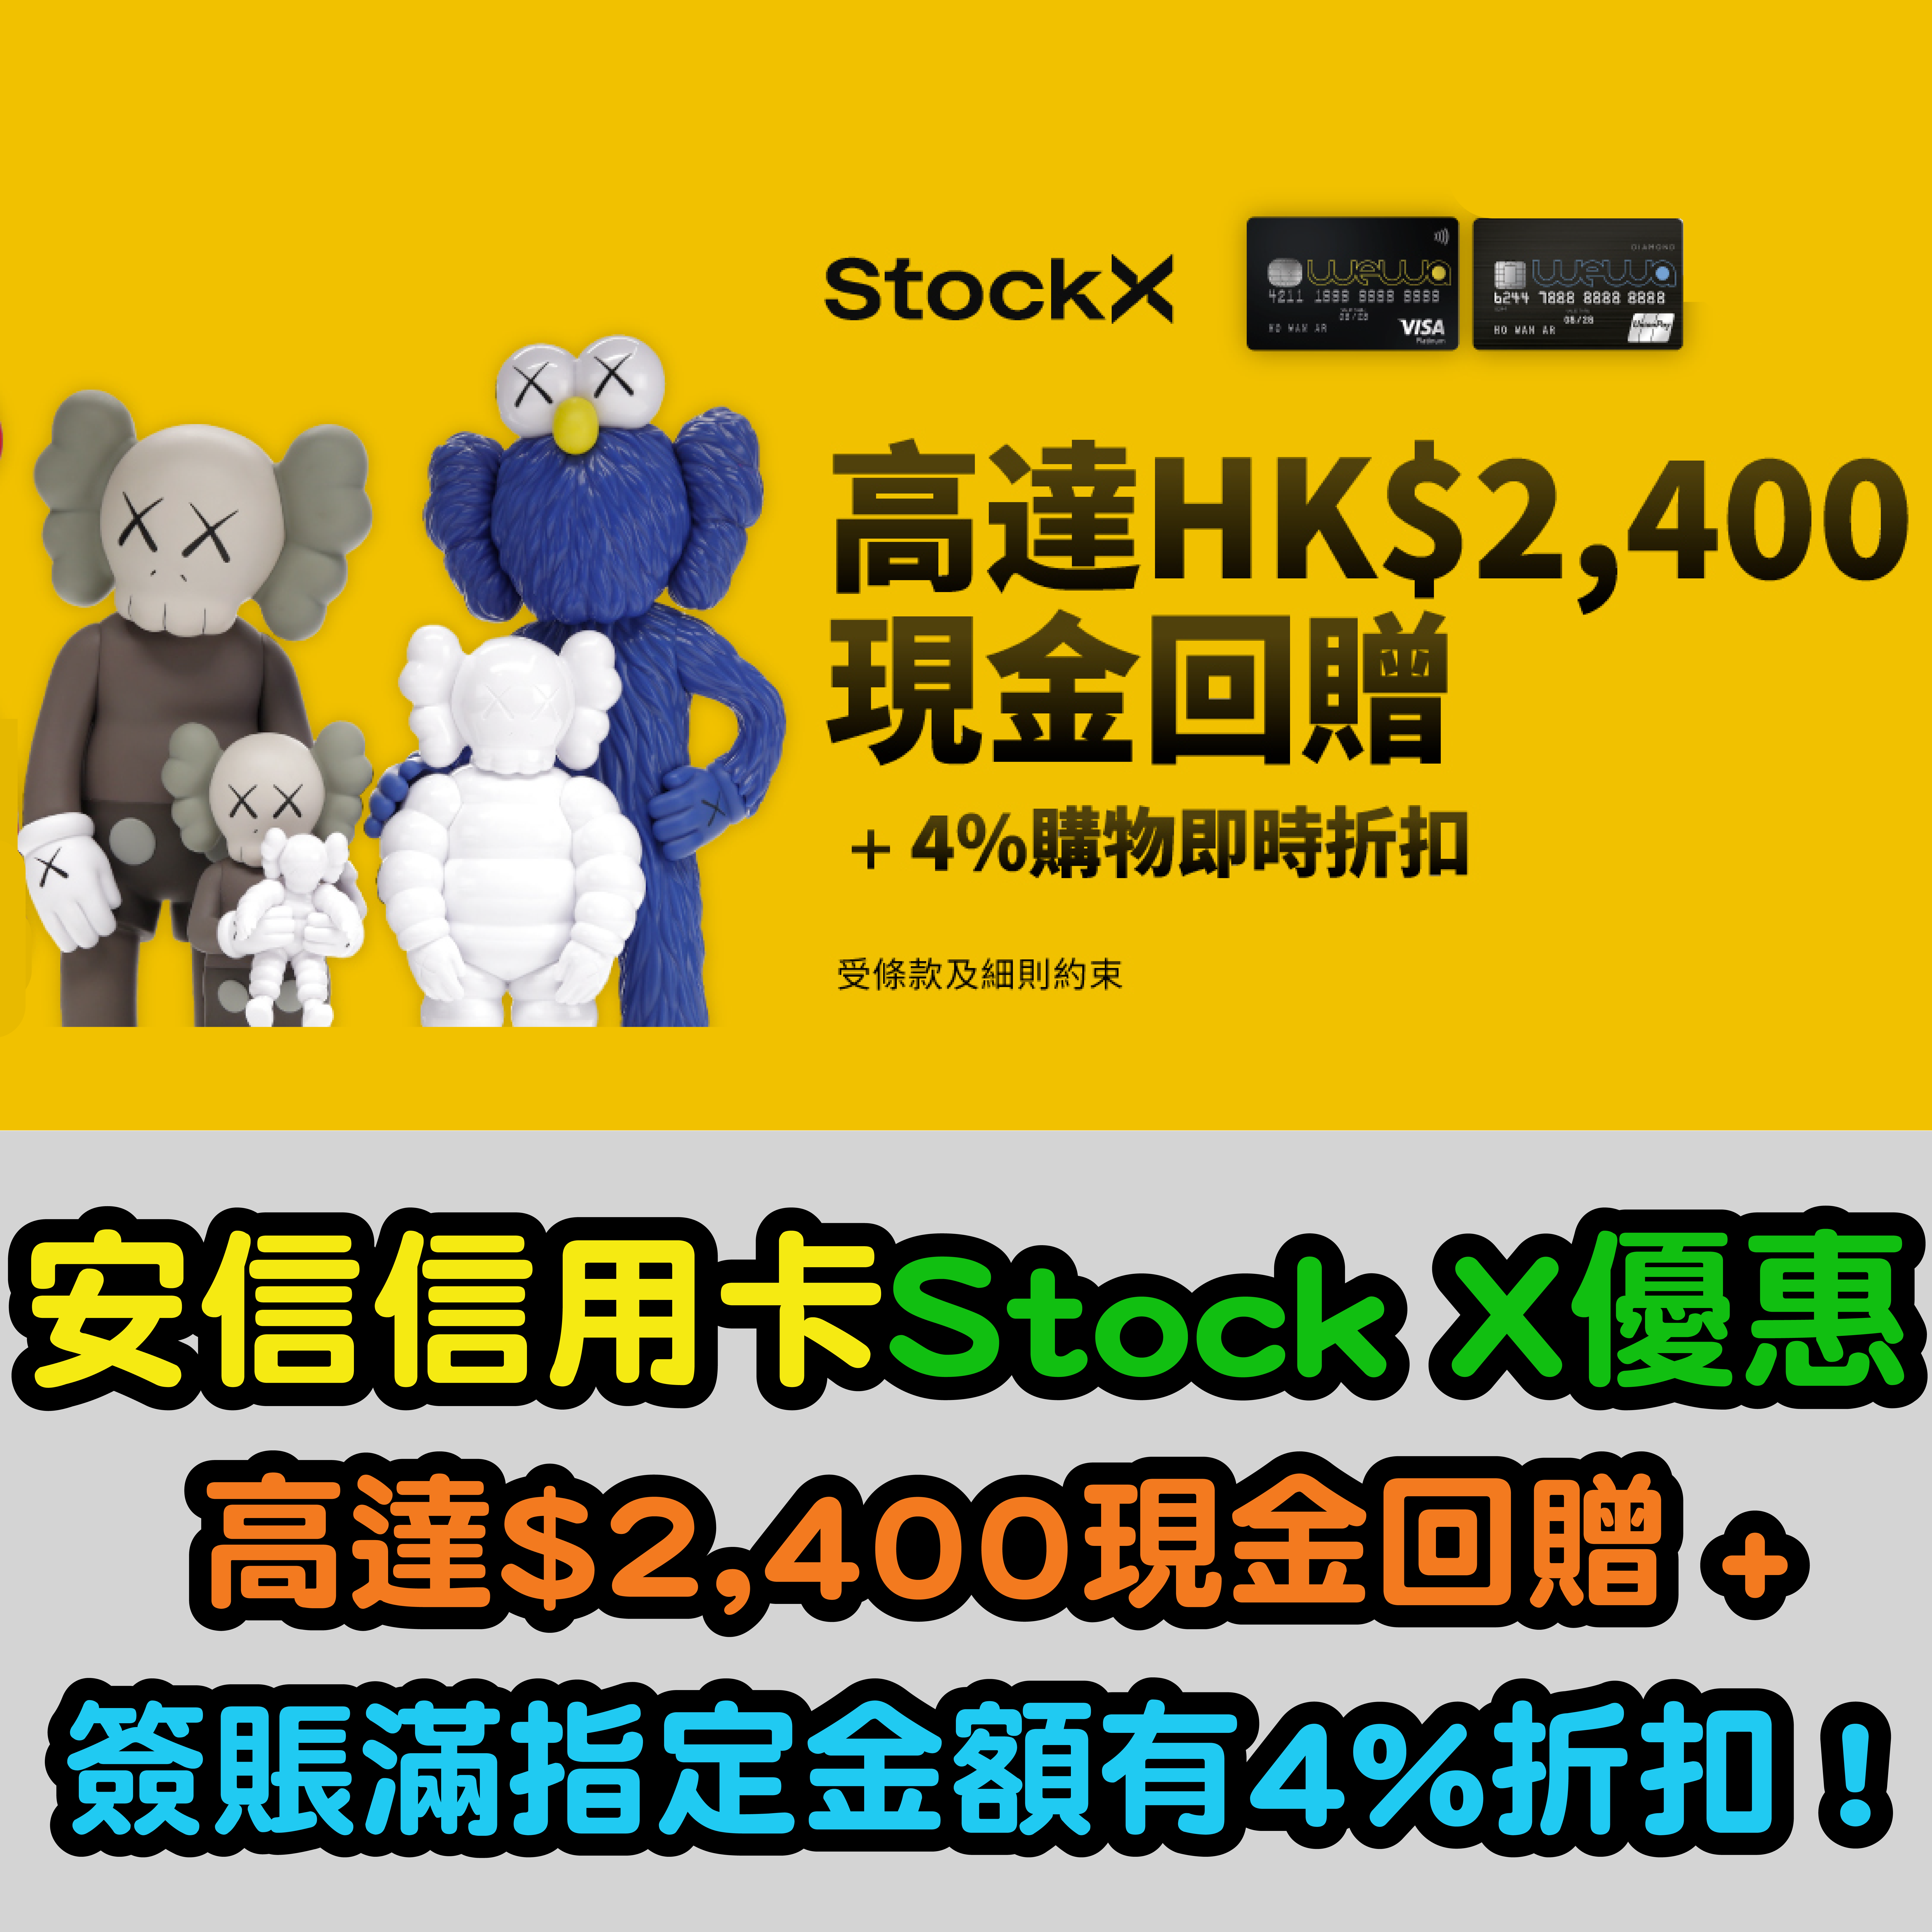 【安信信用卡Stock X優惠】高達$2,400現金回贈 + 簽賬滿指定金額有4%折扣優惠！